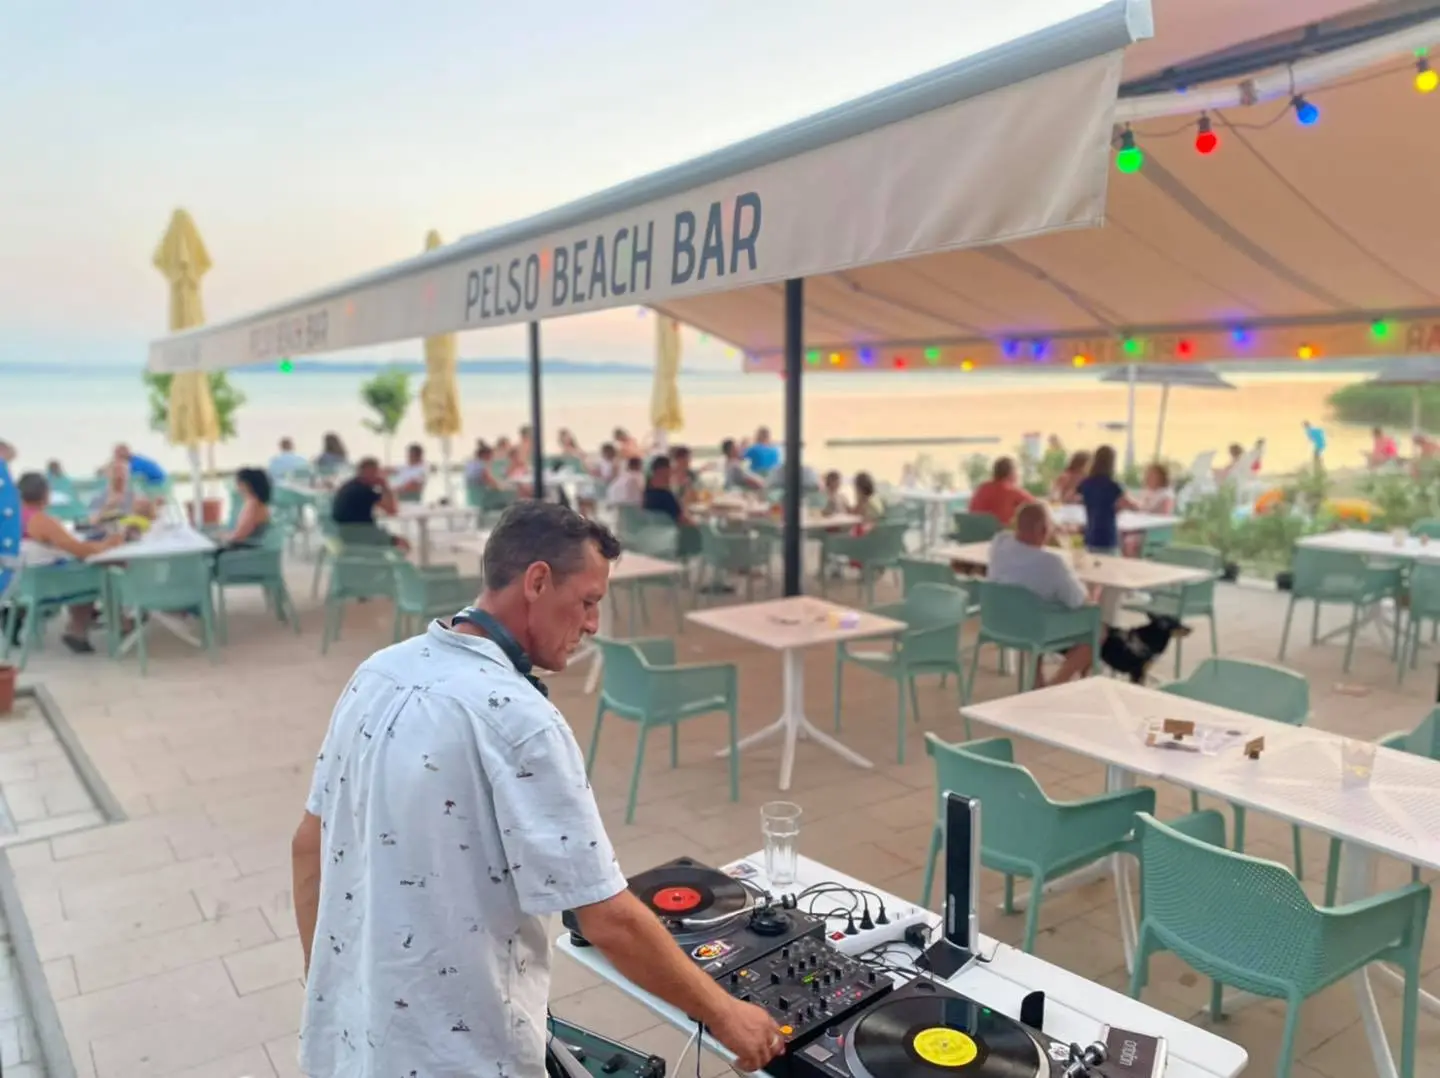 Pelso Beach Bar